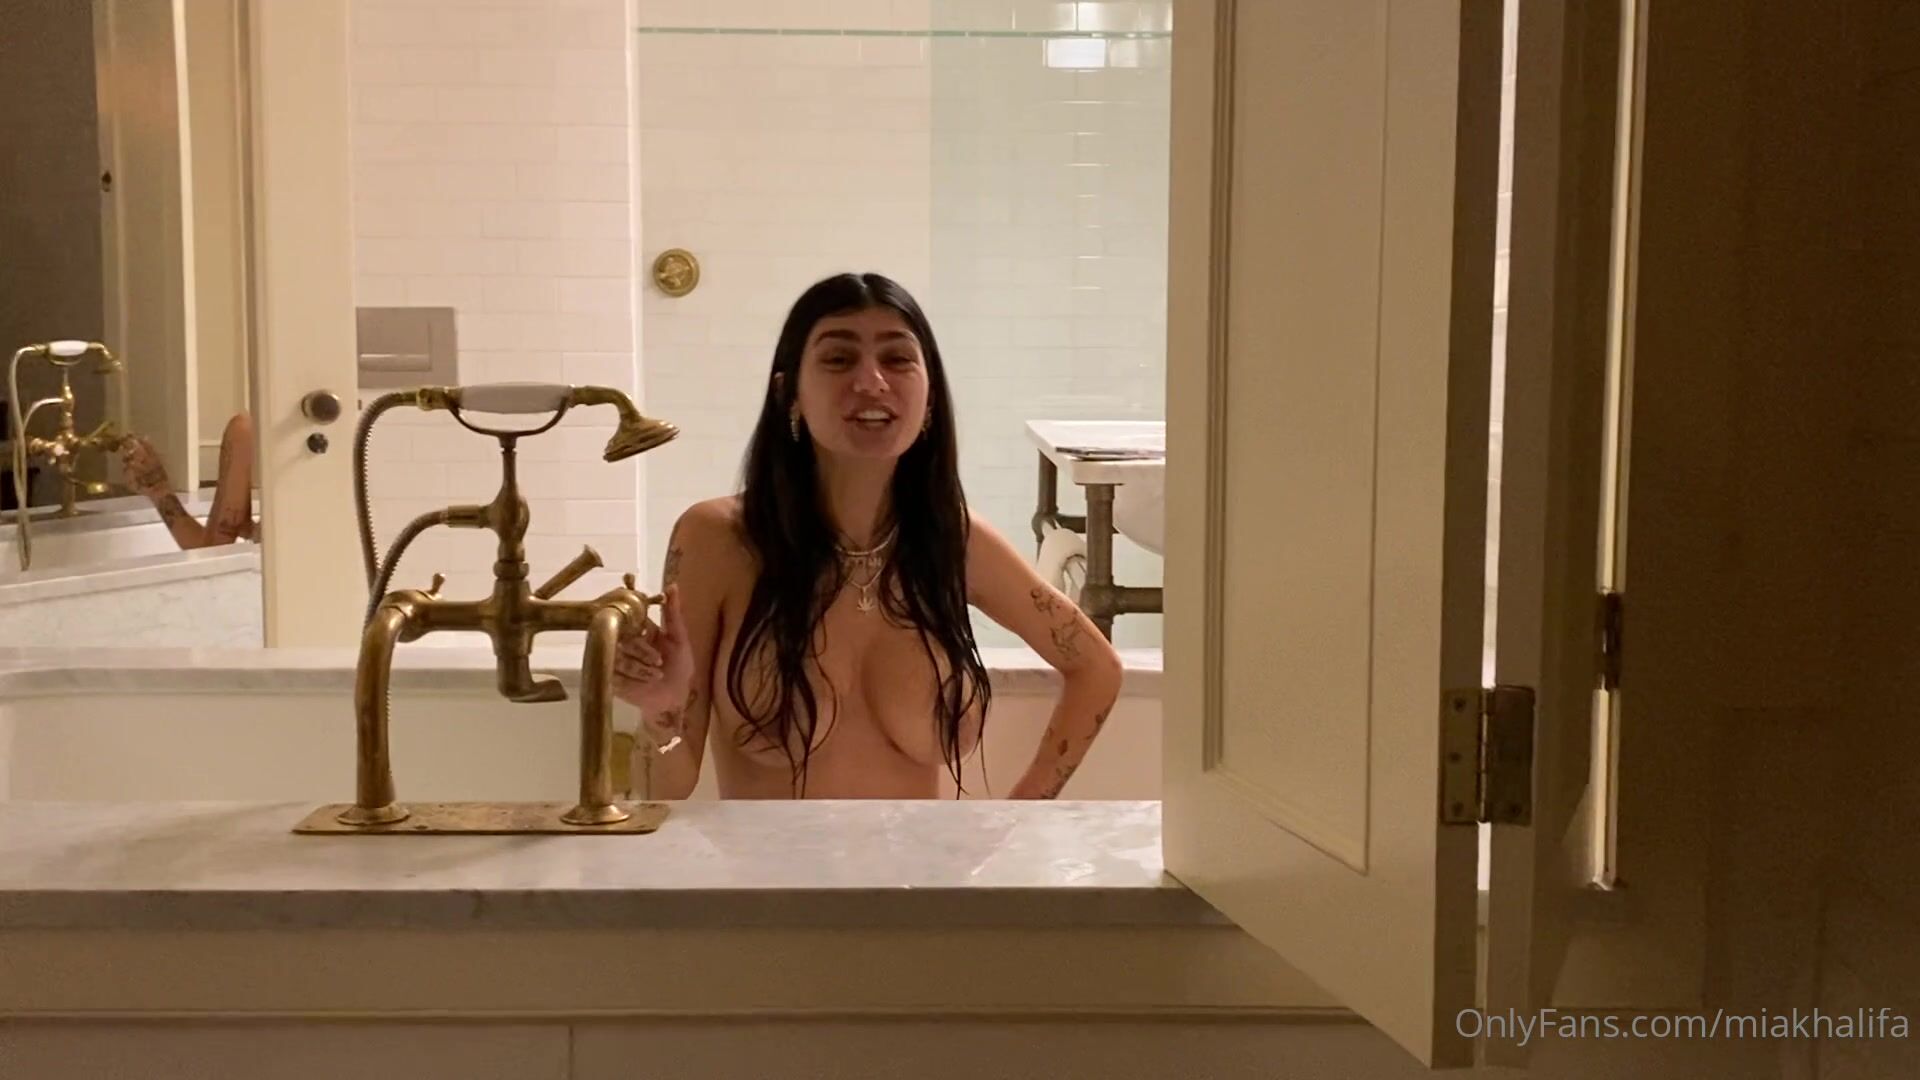 Mia Khalifa naked bathtub Live Onlyfans